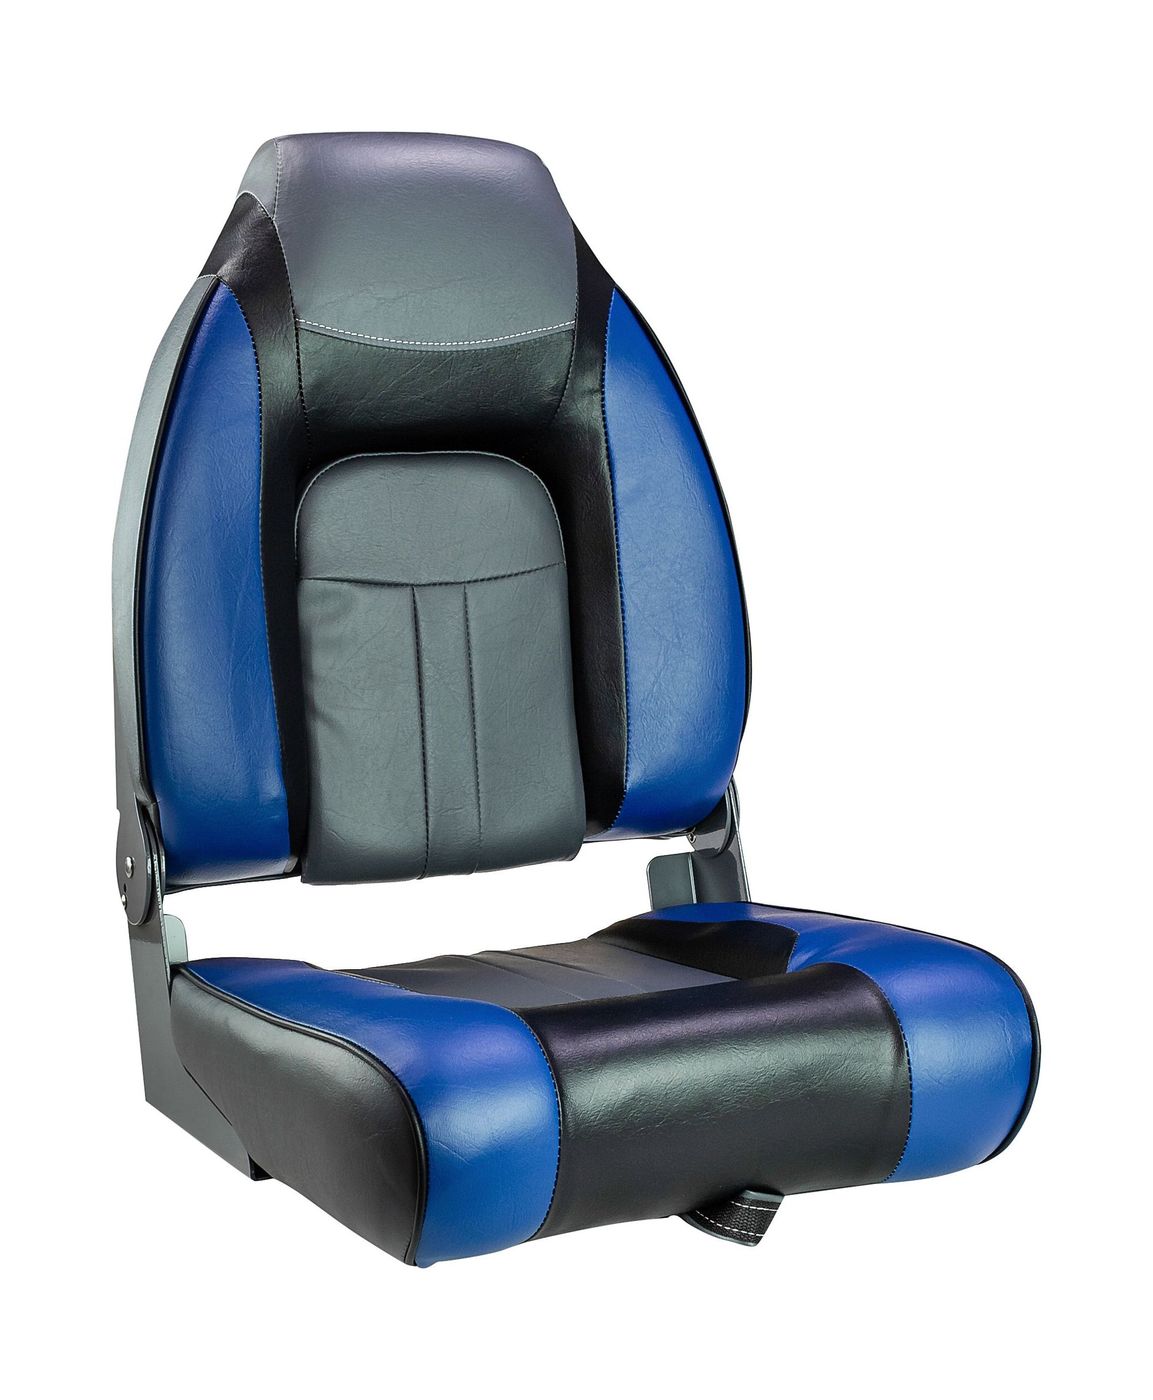 Кресло мягкое складное, обивка винил, цвет синий/угольный/черный, Marine Rocket 75157BCB-MR сиденье мягкое pro casting обивка синий винил 75104b